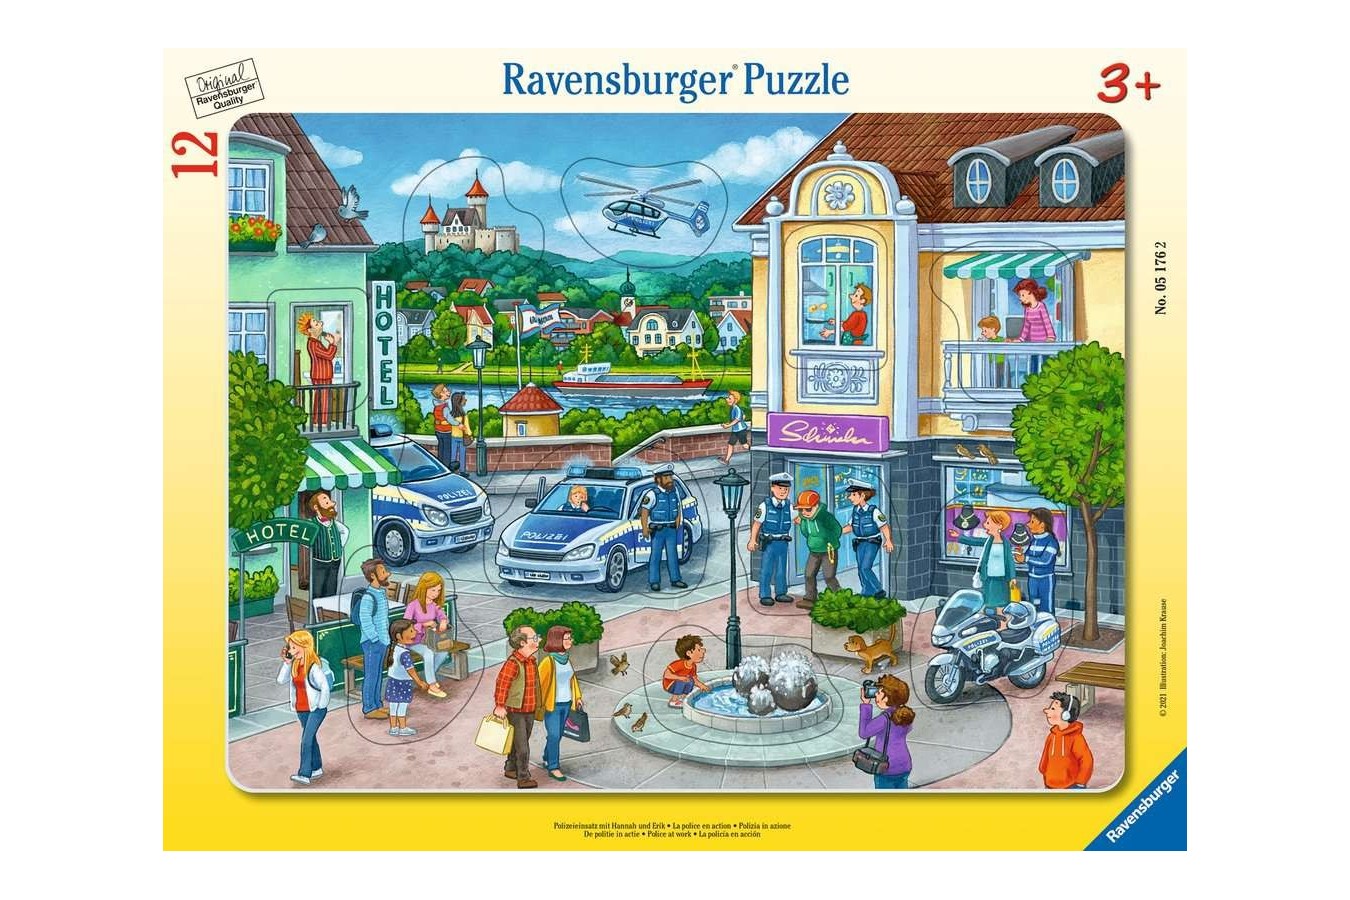 Puzzle 12 piese Ravensburger - Politia In Actiune (Ravensburger-05176)